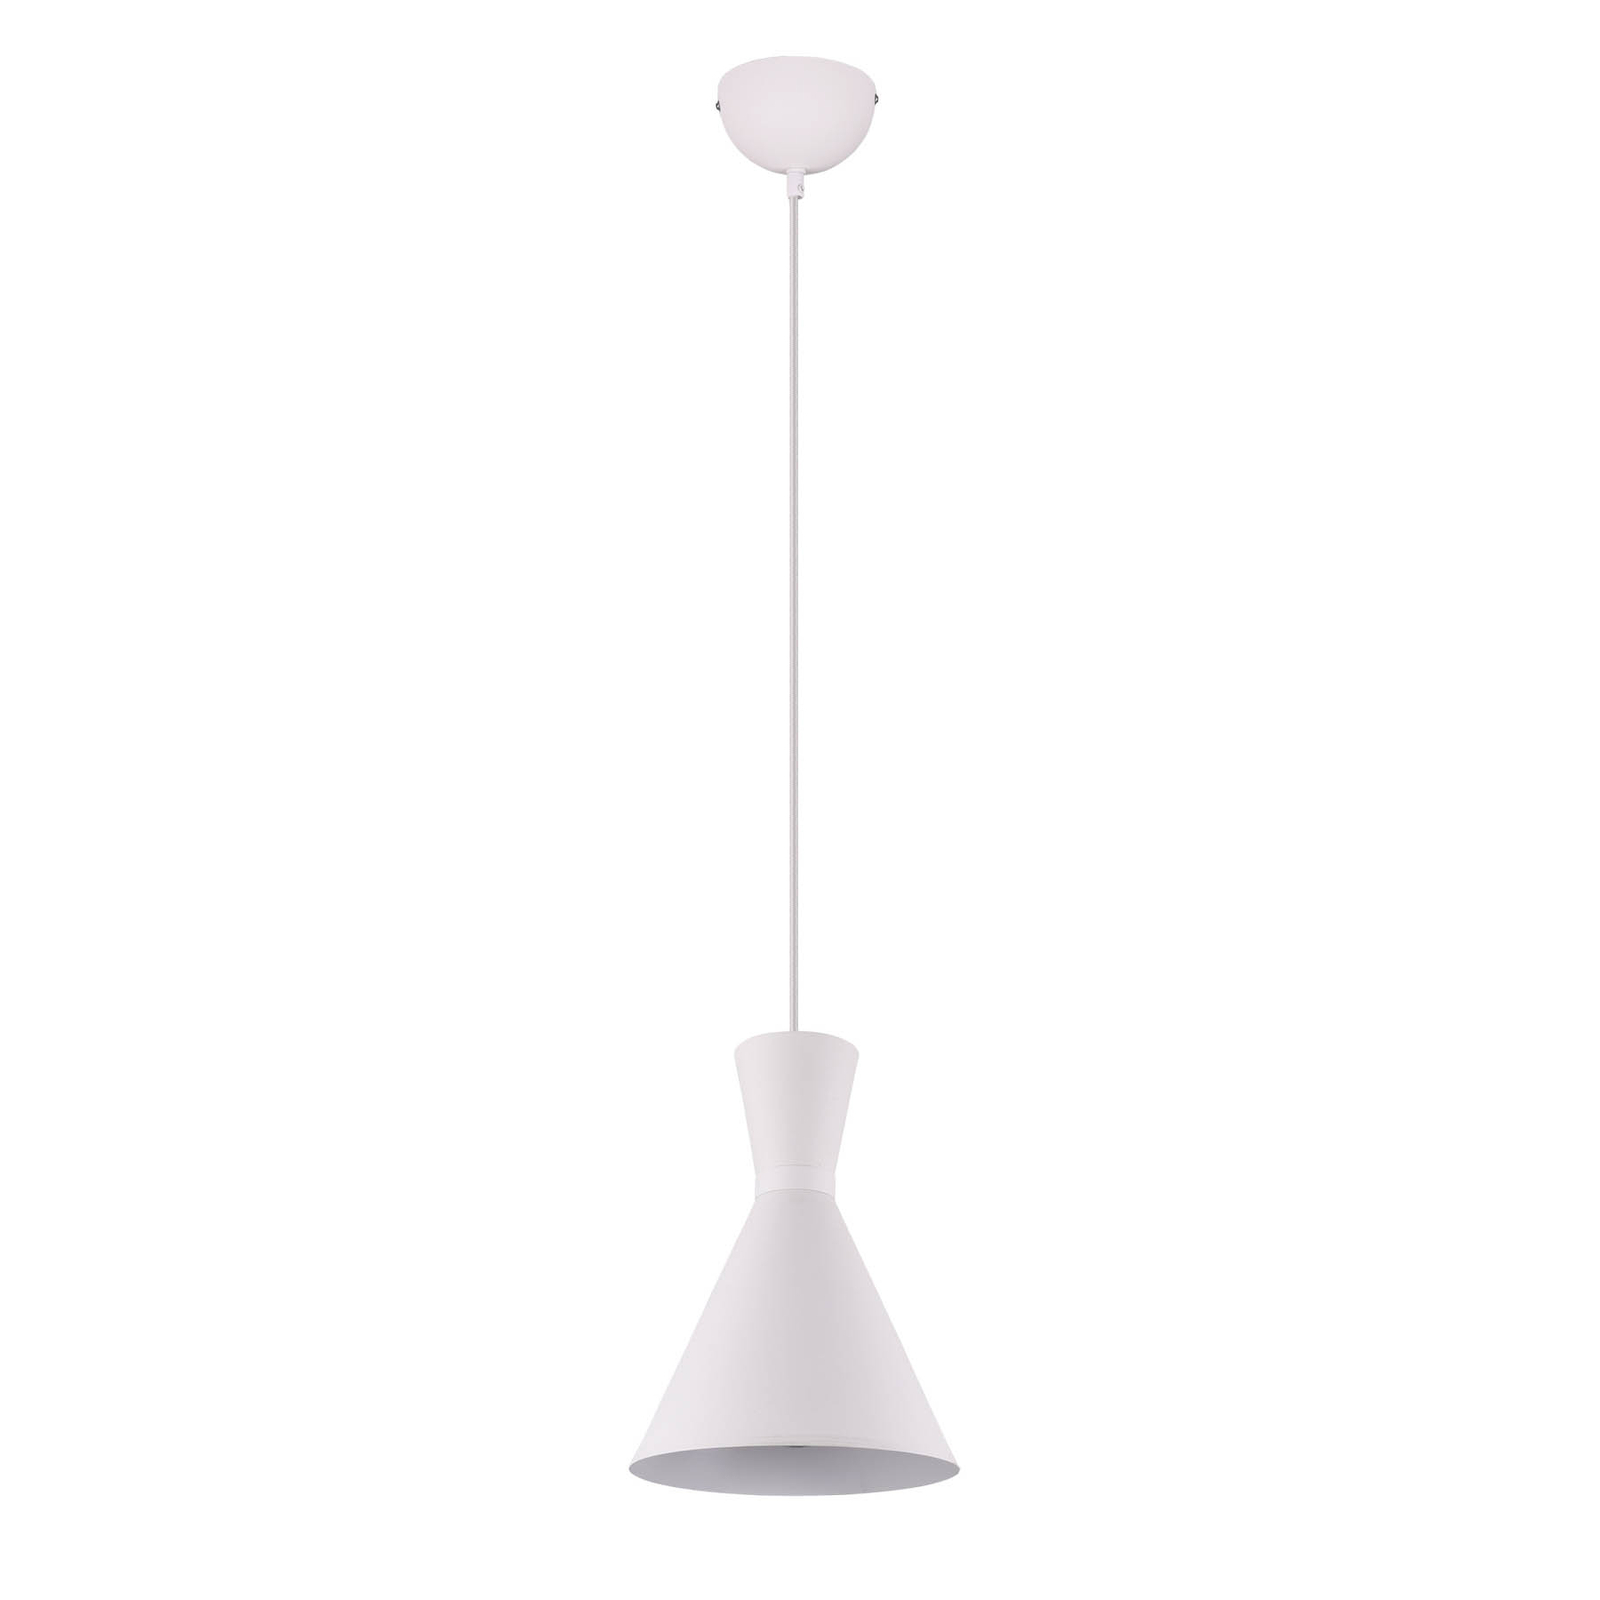 Enzo pendant light, one-bulb, Ø 20 cm, white